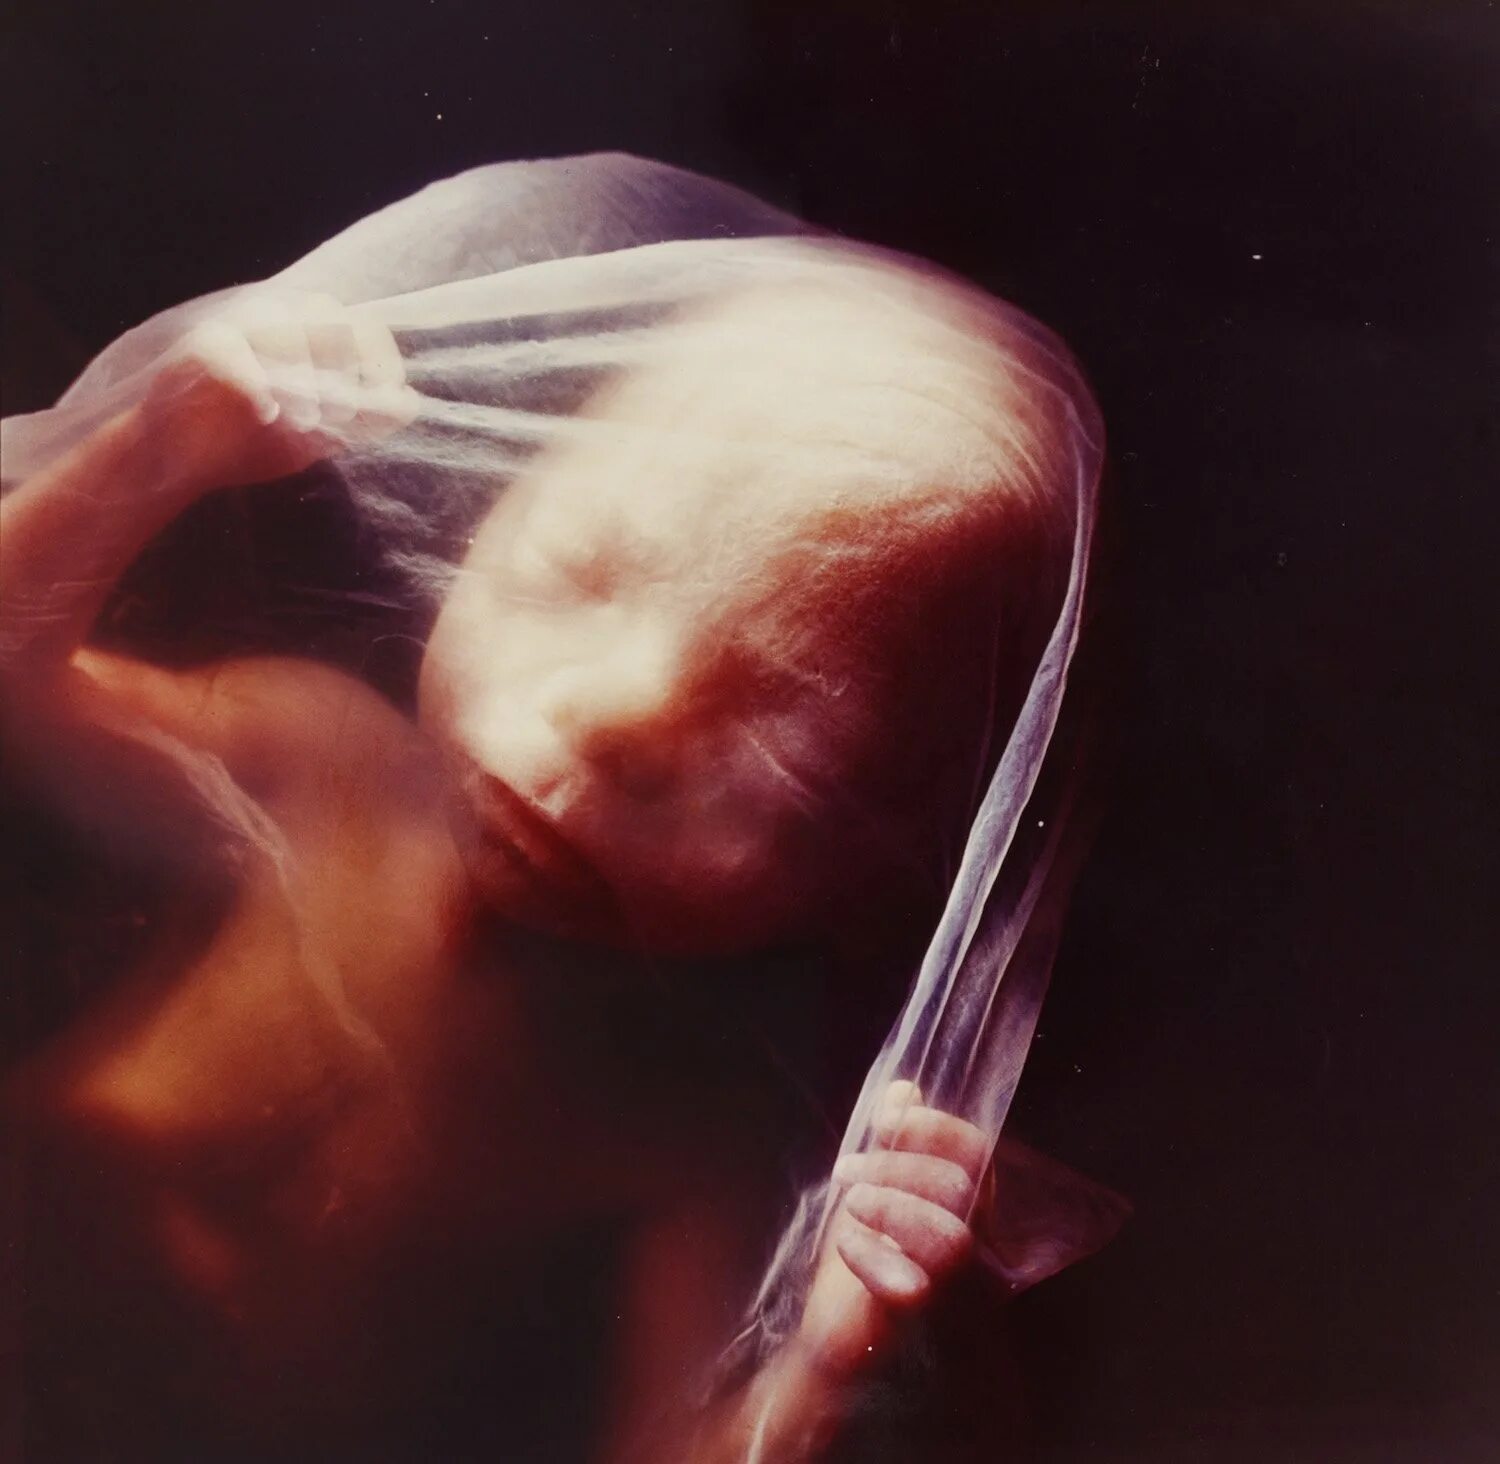 22 неделя беременности что происходит мамой. Эмбрион Леннарт Нильсон. Эмбрион 18 недель Леннарт Нильссон. "Зародыш, 18 недель", Леннарт Нильсон, 1965..